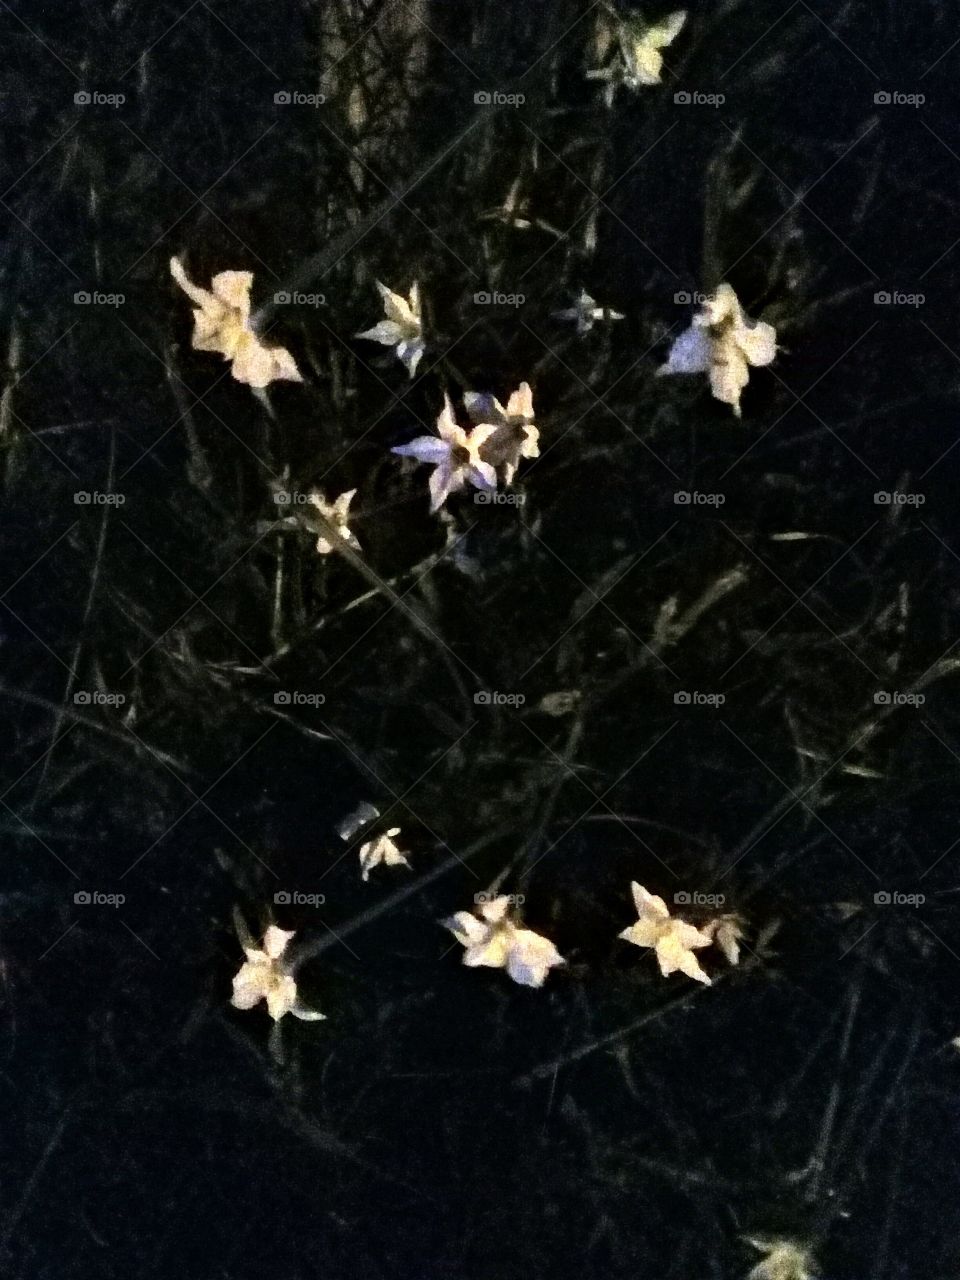 imagen de flores silvestres fotografiadas en un camino a una hora todavía oscura de madrugada.